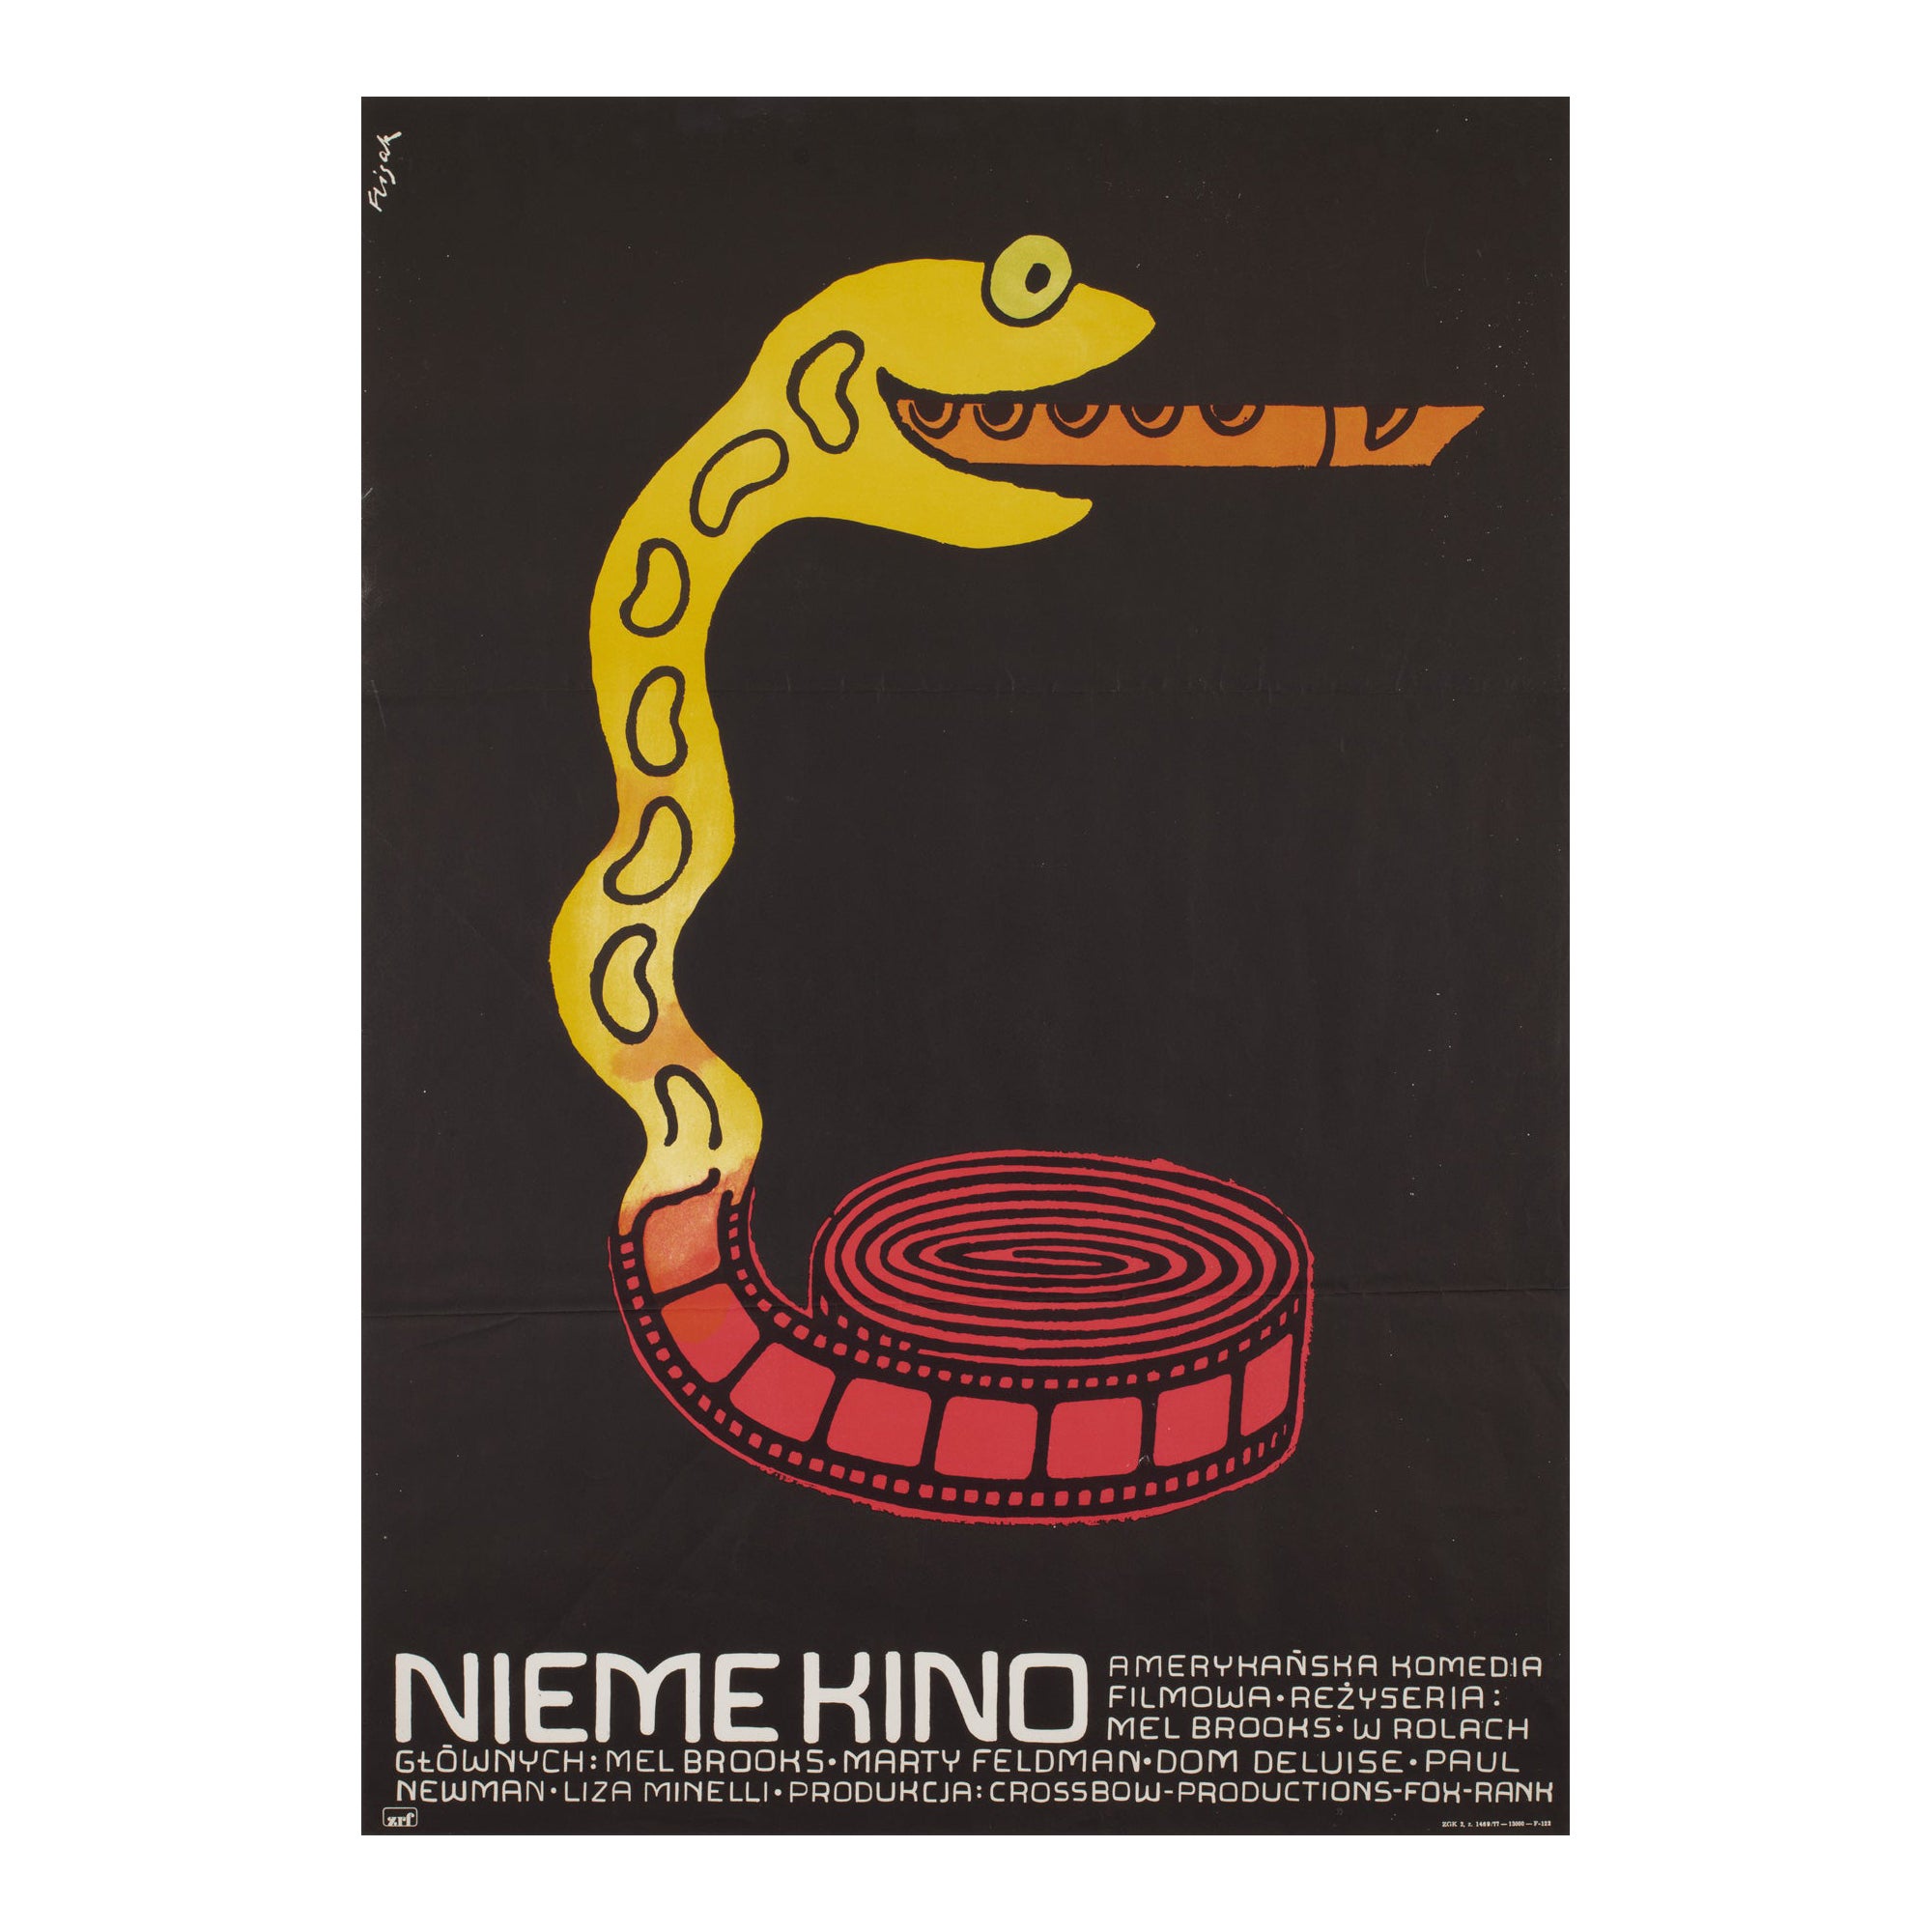 Affiche A1 polonaise du film Silent (Silent Movie), Flisak 1976